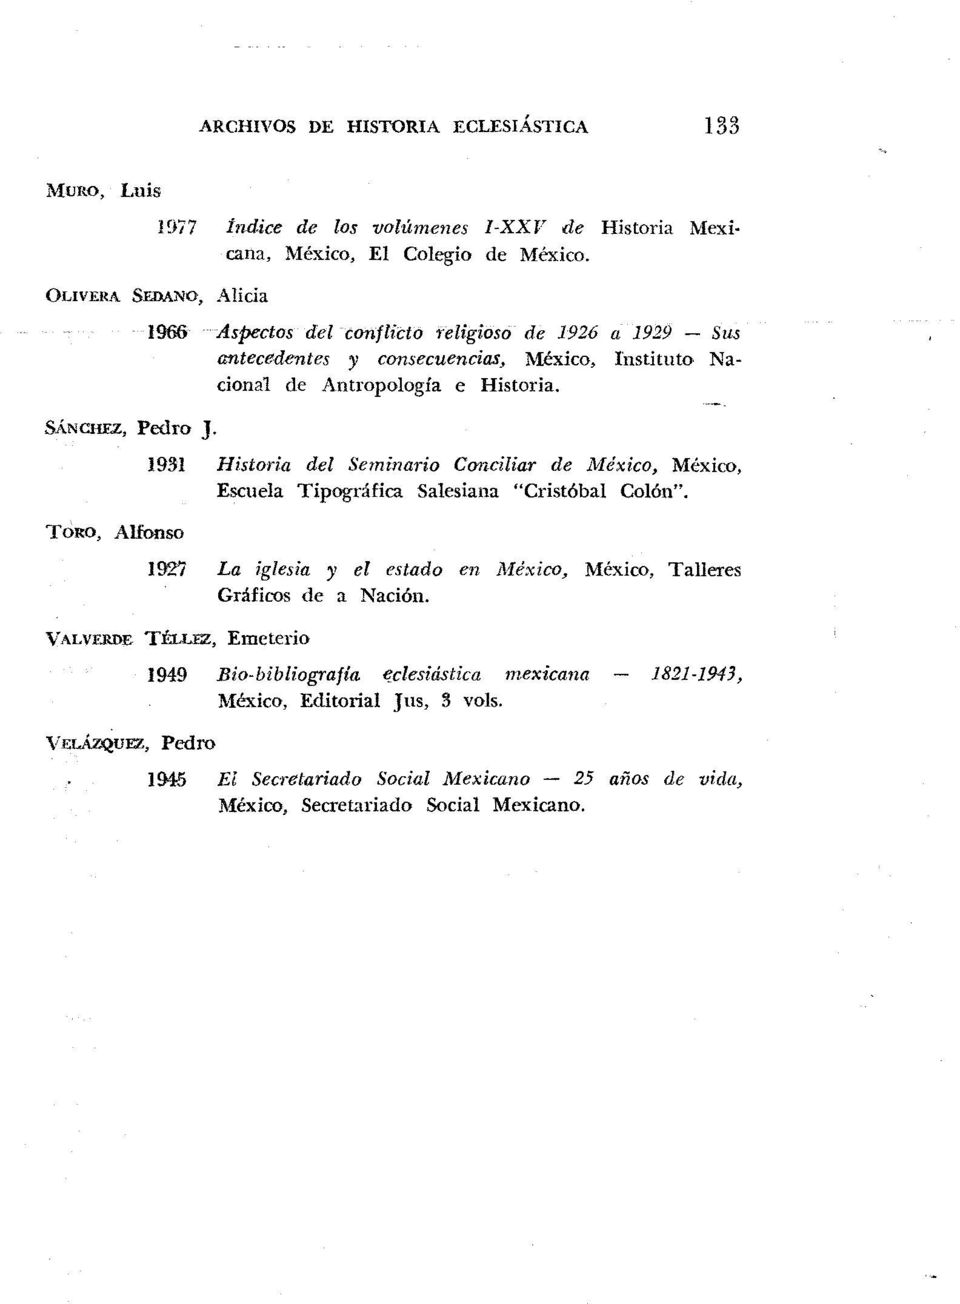 1966 Aspectos del conflicto religioso de 1926 a 1929 Sus antecedentes y consecuencias, México, Instituto Nacional de Antropología e Historia.